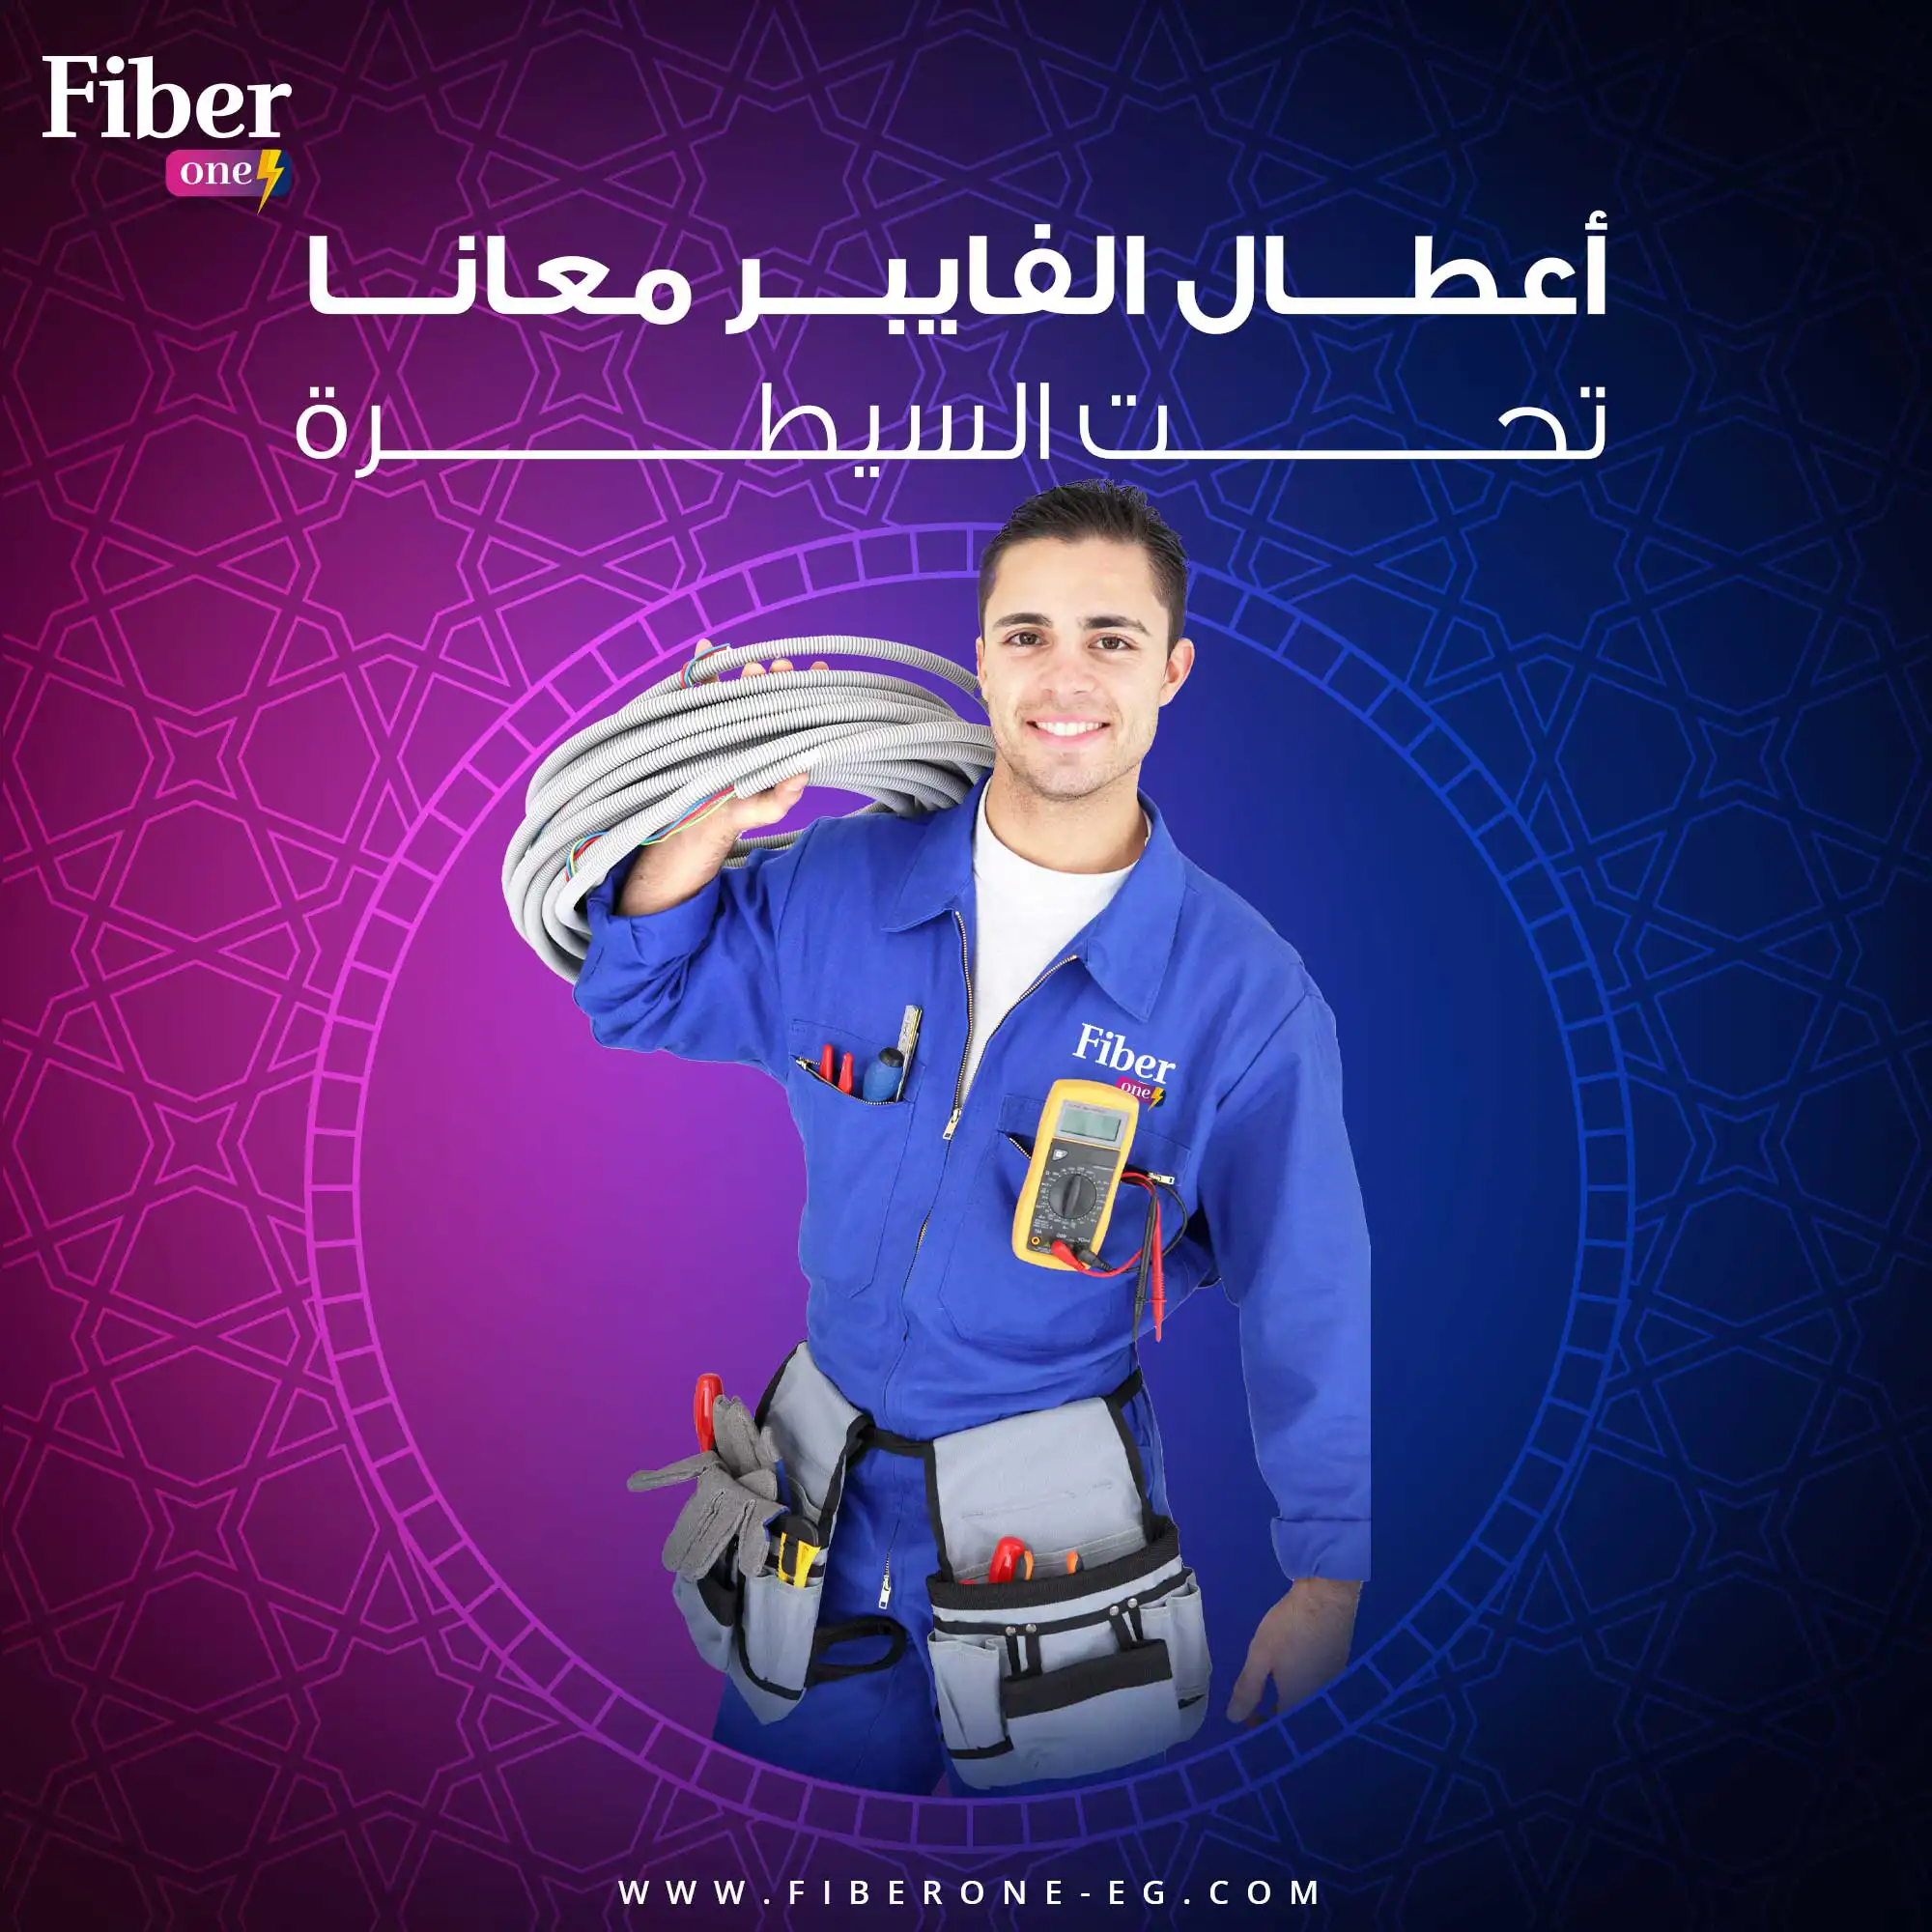 fiber one social media 6